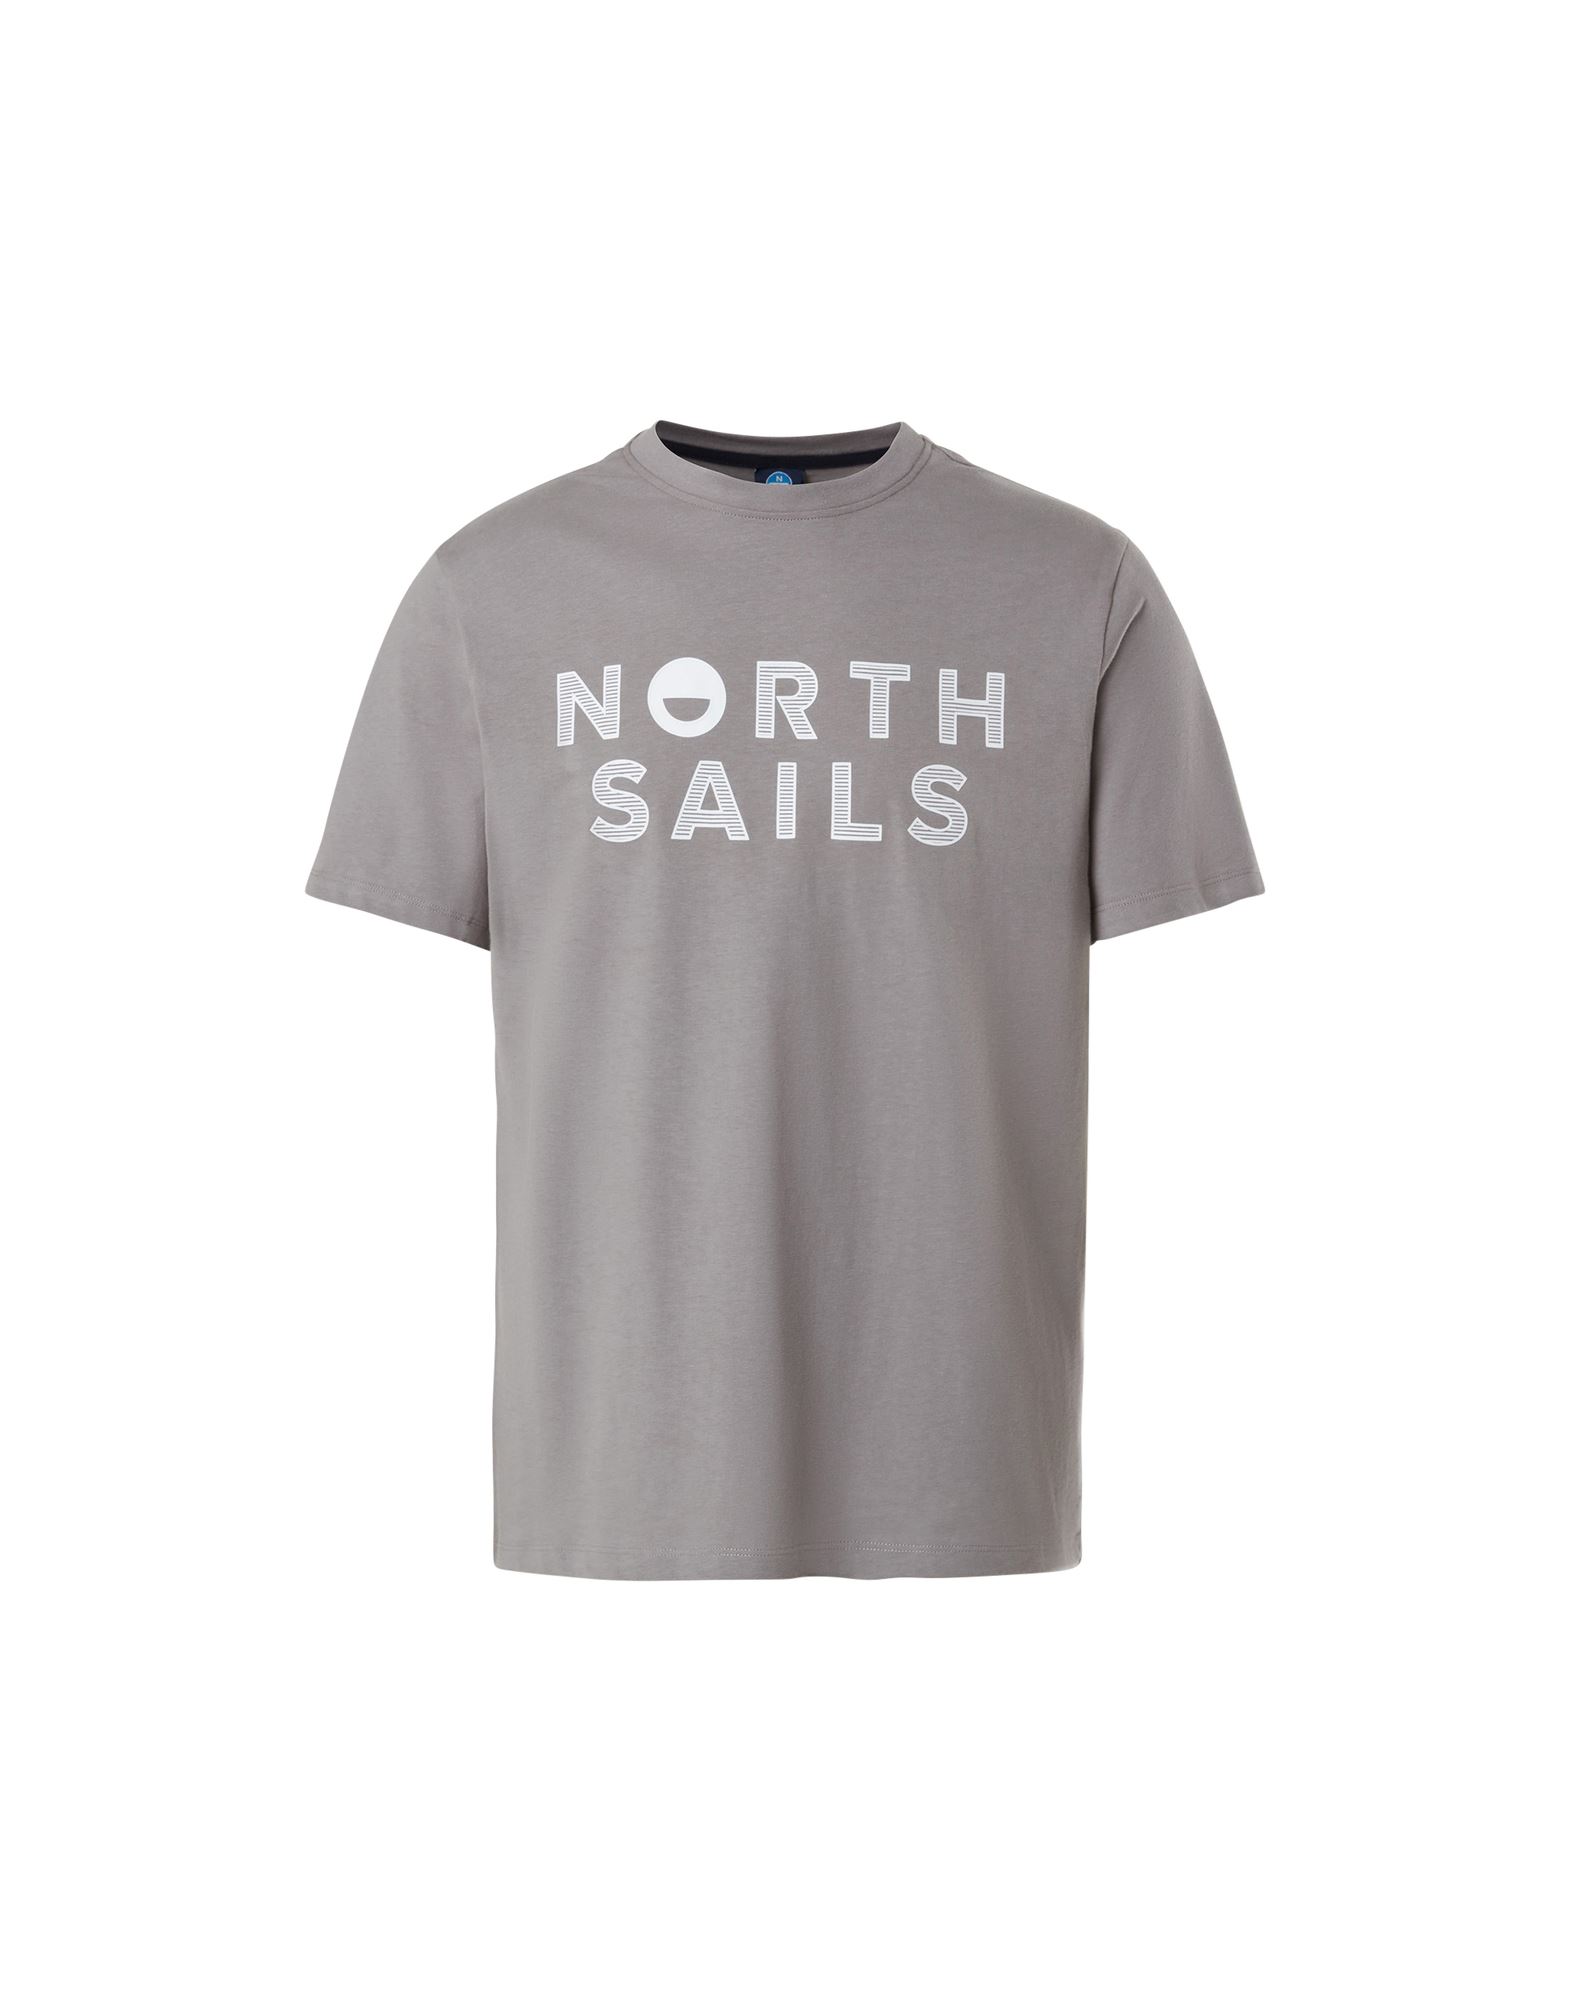 NORTH SAILS T-shirts Herren Grau von NORTH SAILS